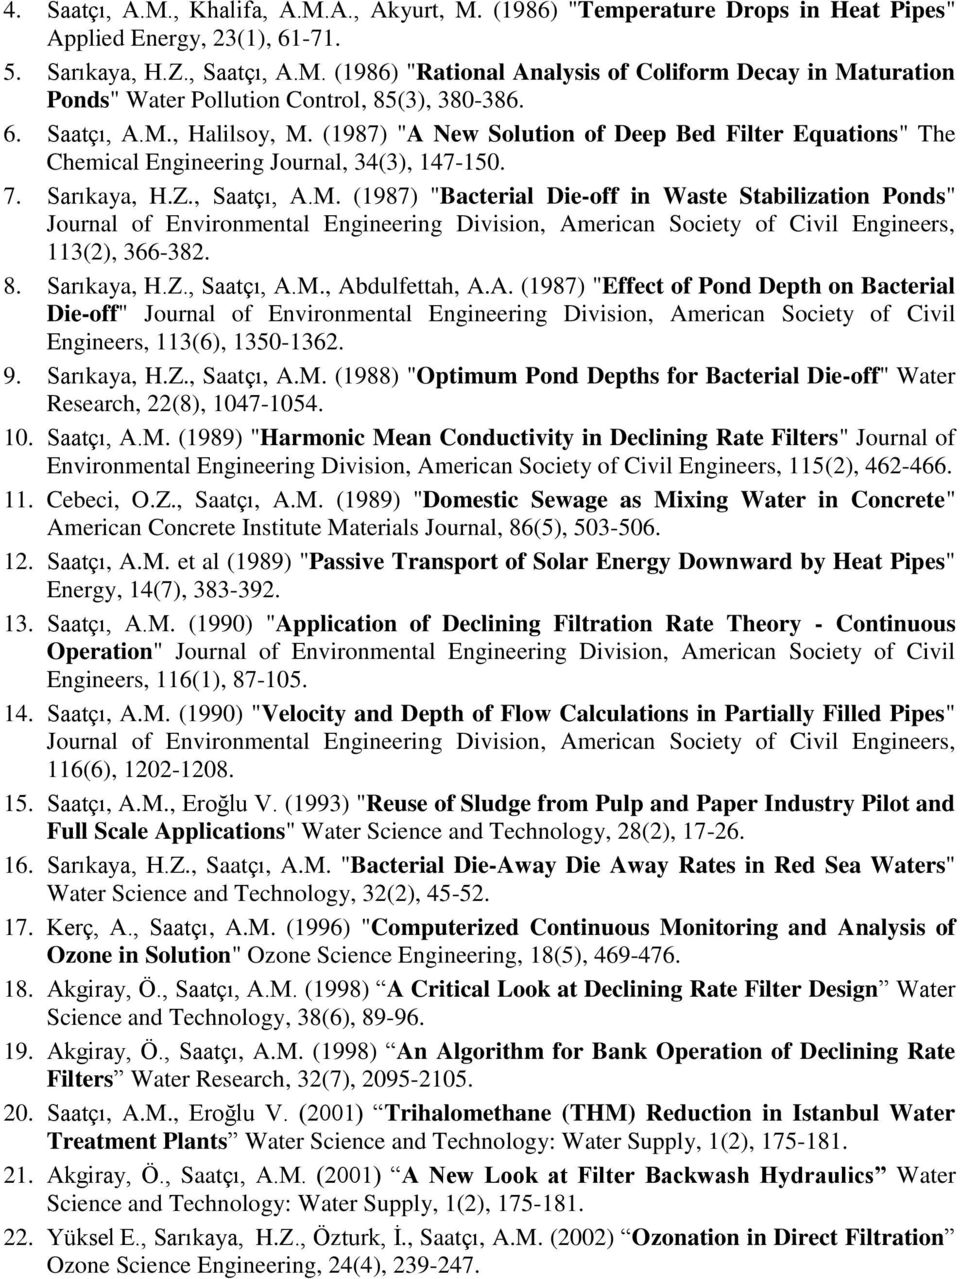 8. Sarıkaya, H.Z., Saatçı, A.M., Abdulfettah, A.A. (1987) "Effect of Pond Depth on Bacterial Die-off" Journal of Environmental Engineering Division, American Society of Civil Engineers, 113(6), 1350-1362.